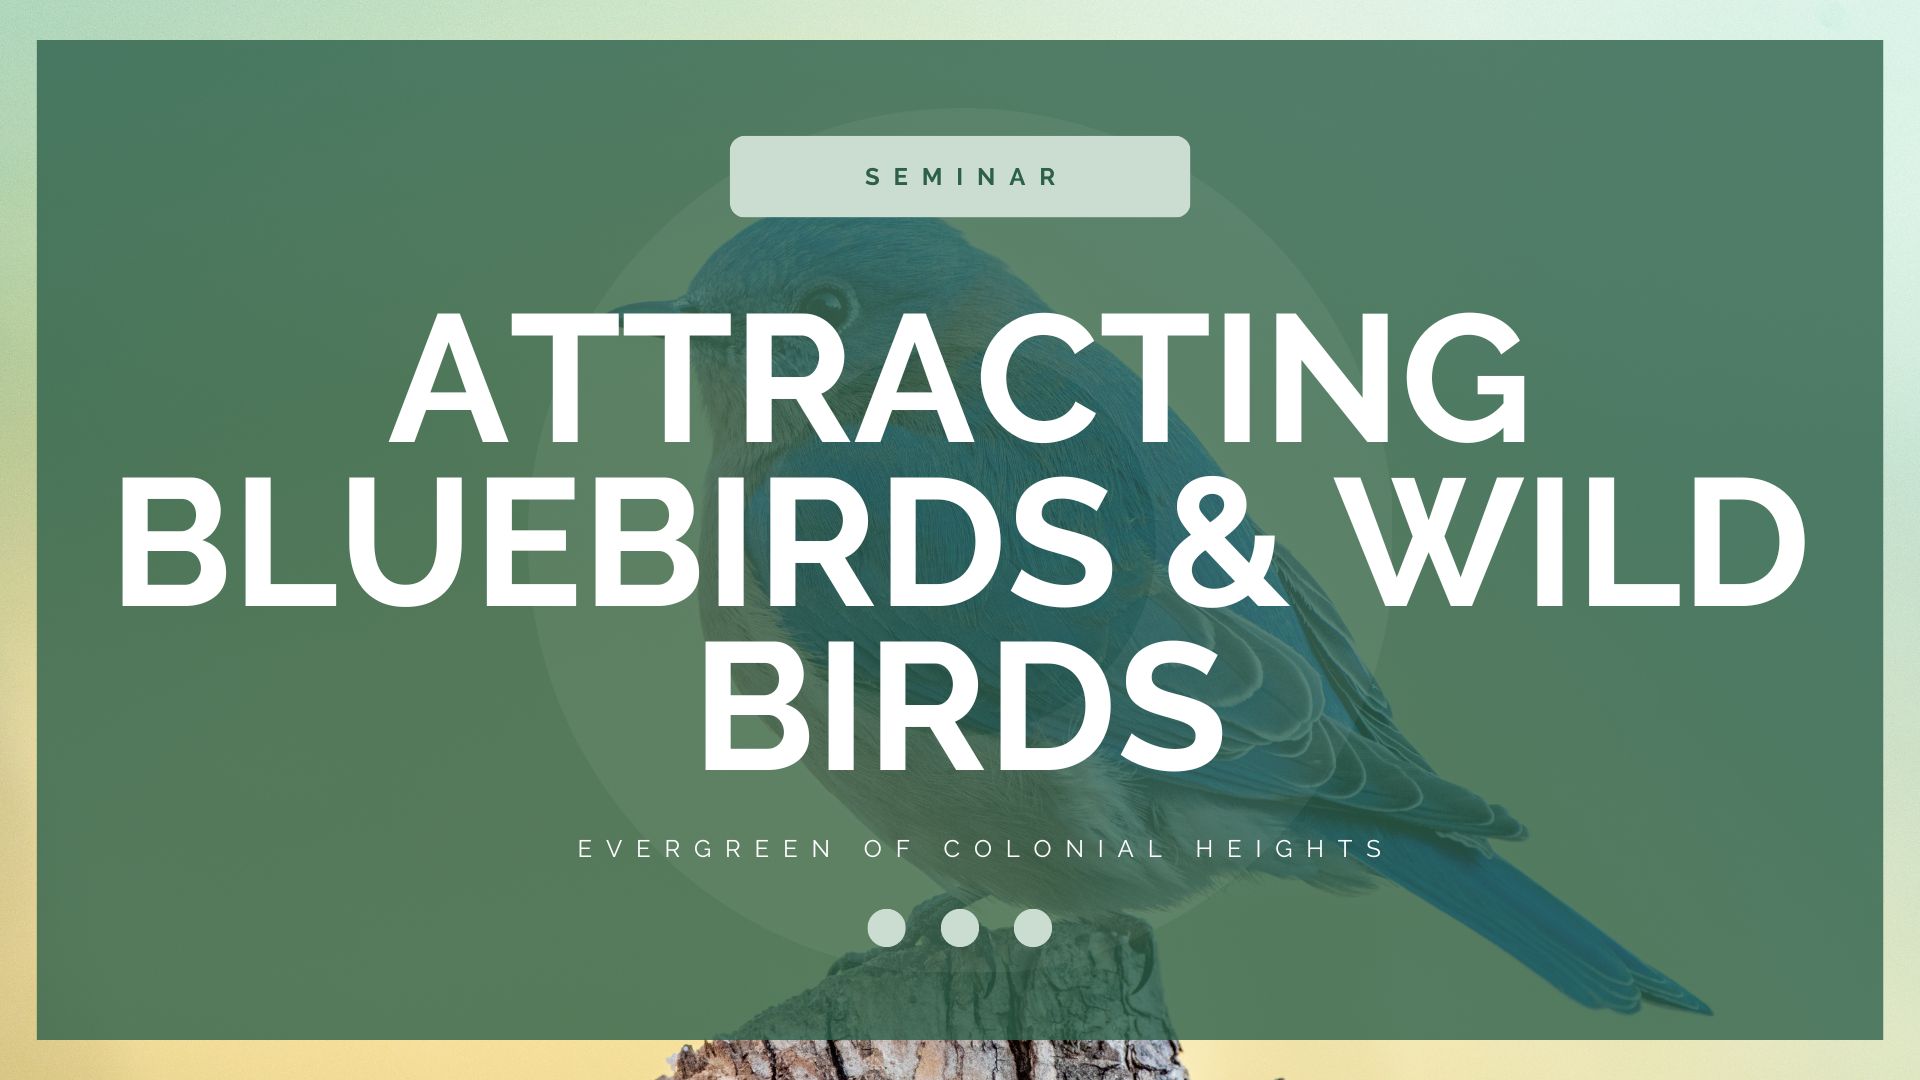 Attracting Bluebirds Wild Birds Seminar Header